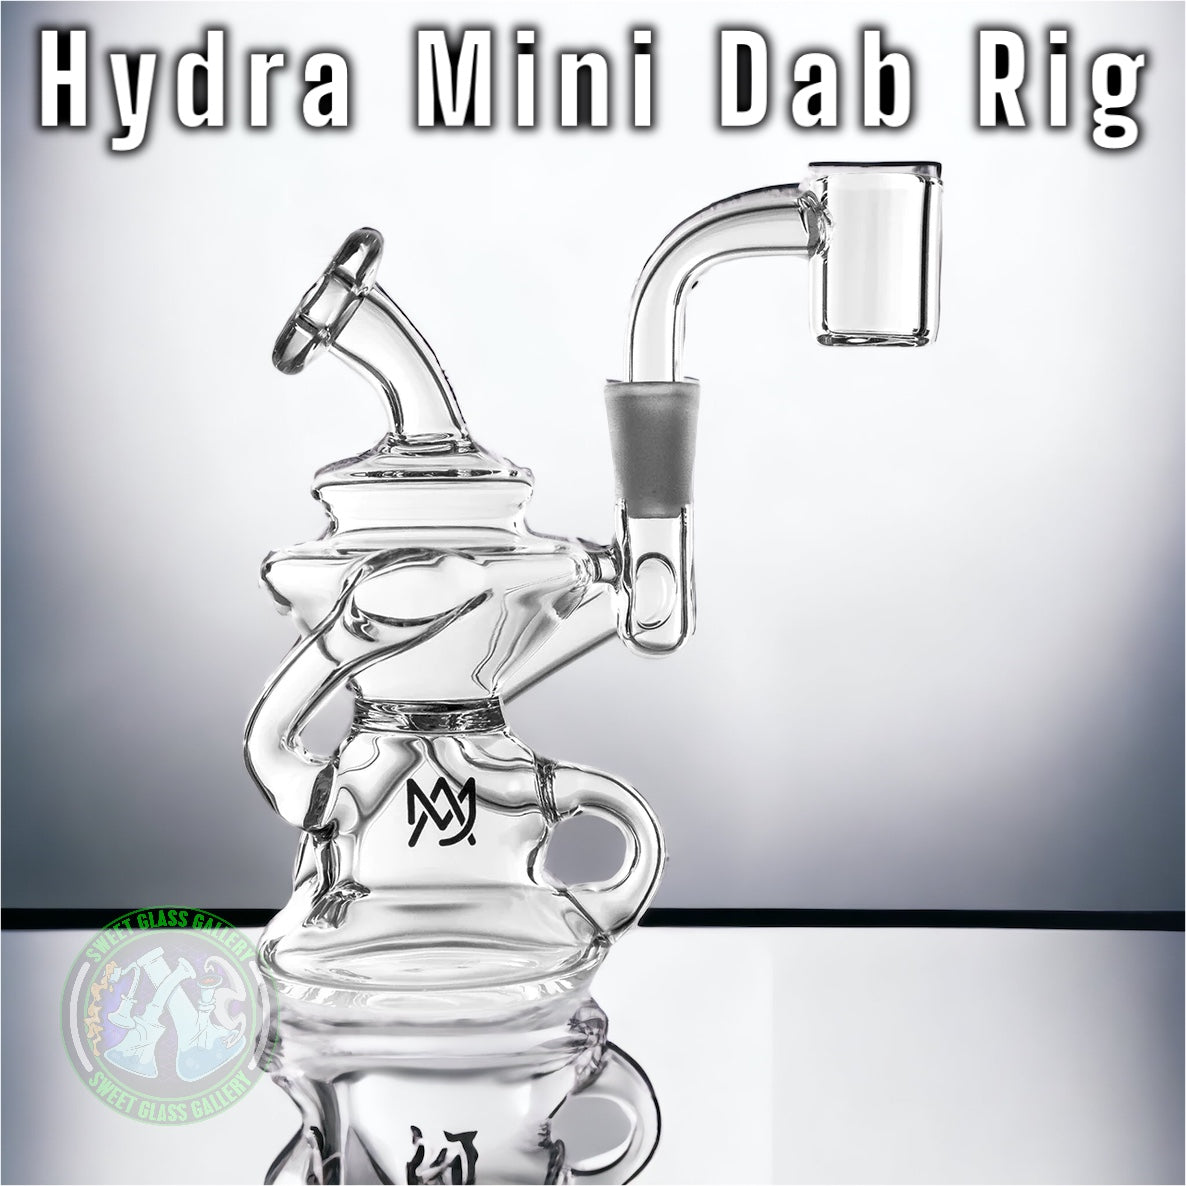 MJ Arsenal - Hydra Mini Dab Rig